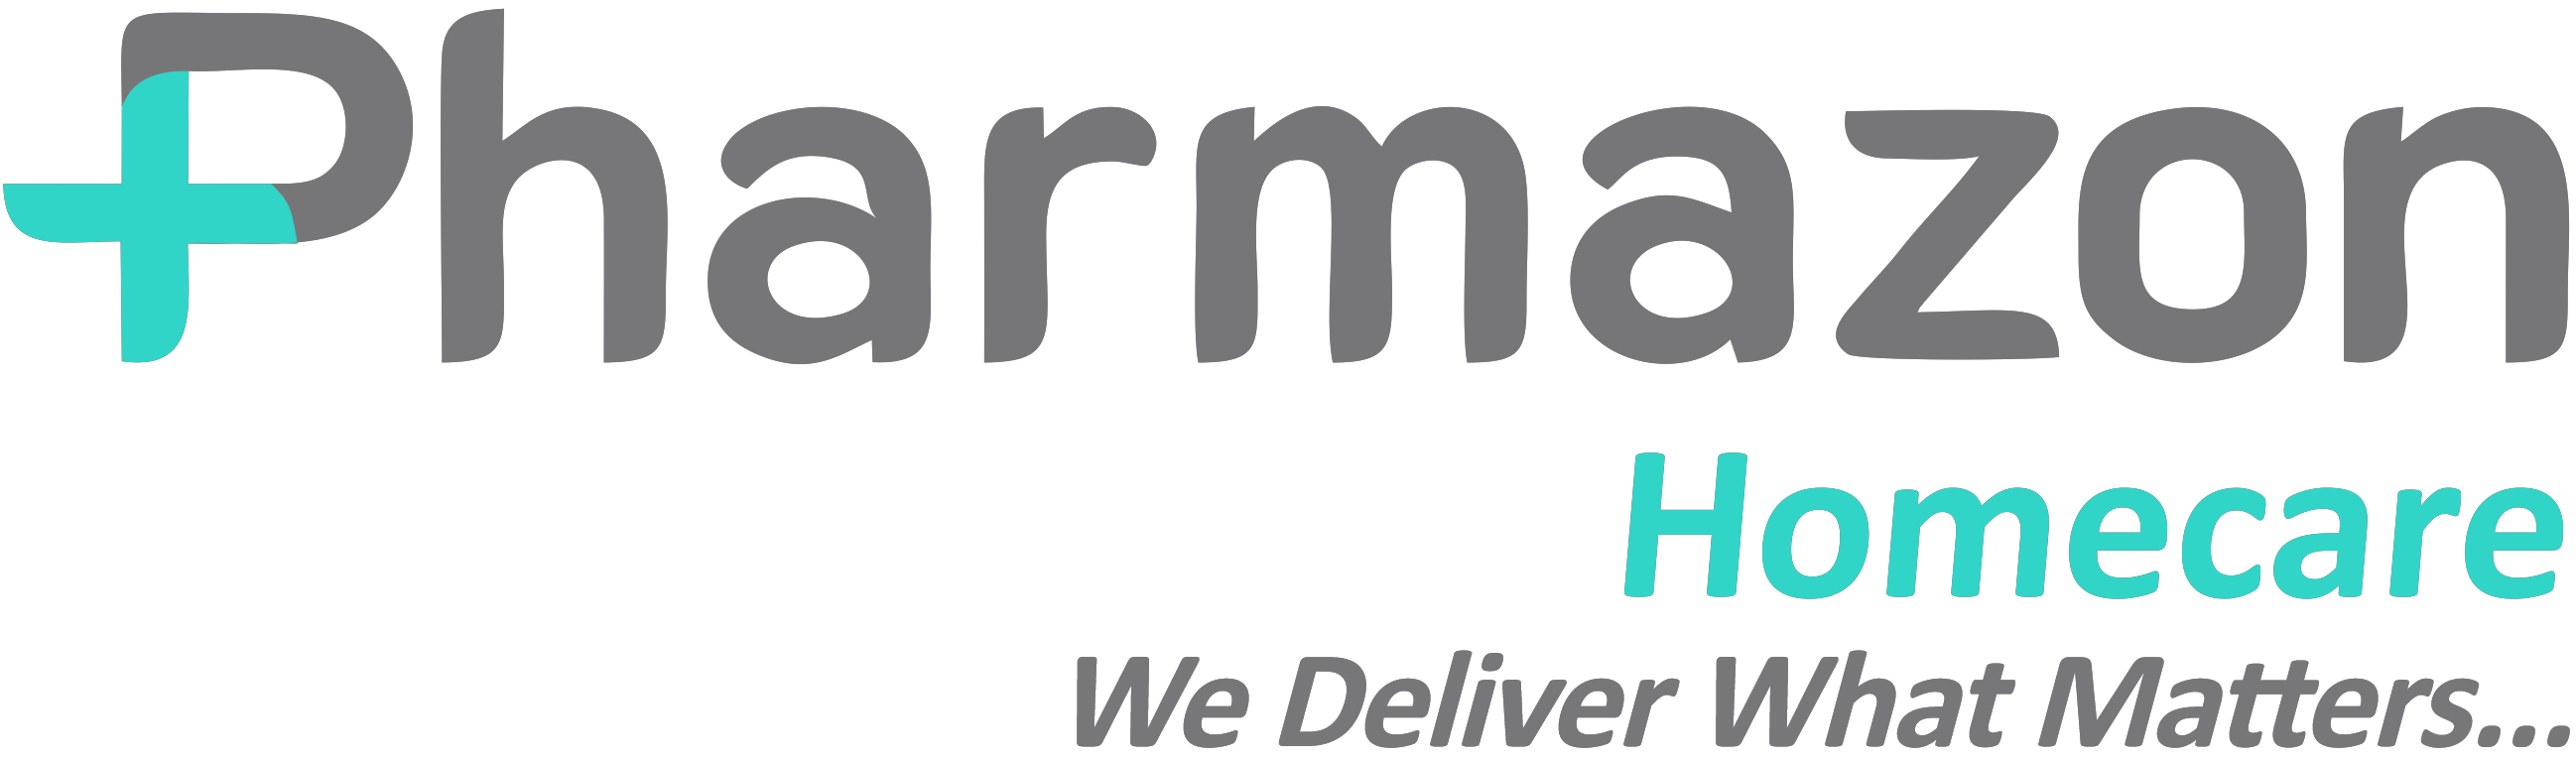 Pharmazon Homecare